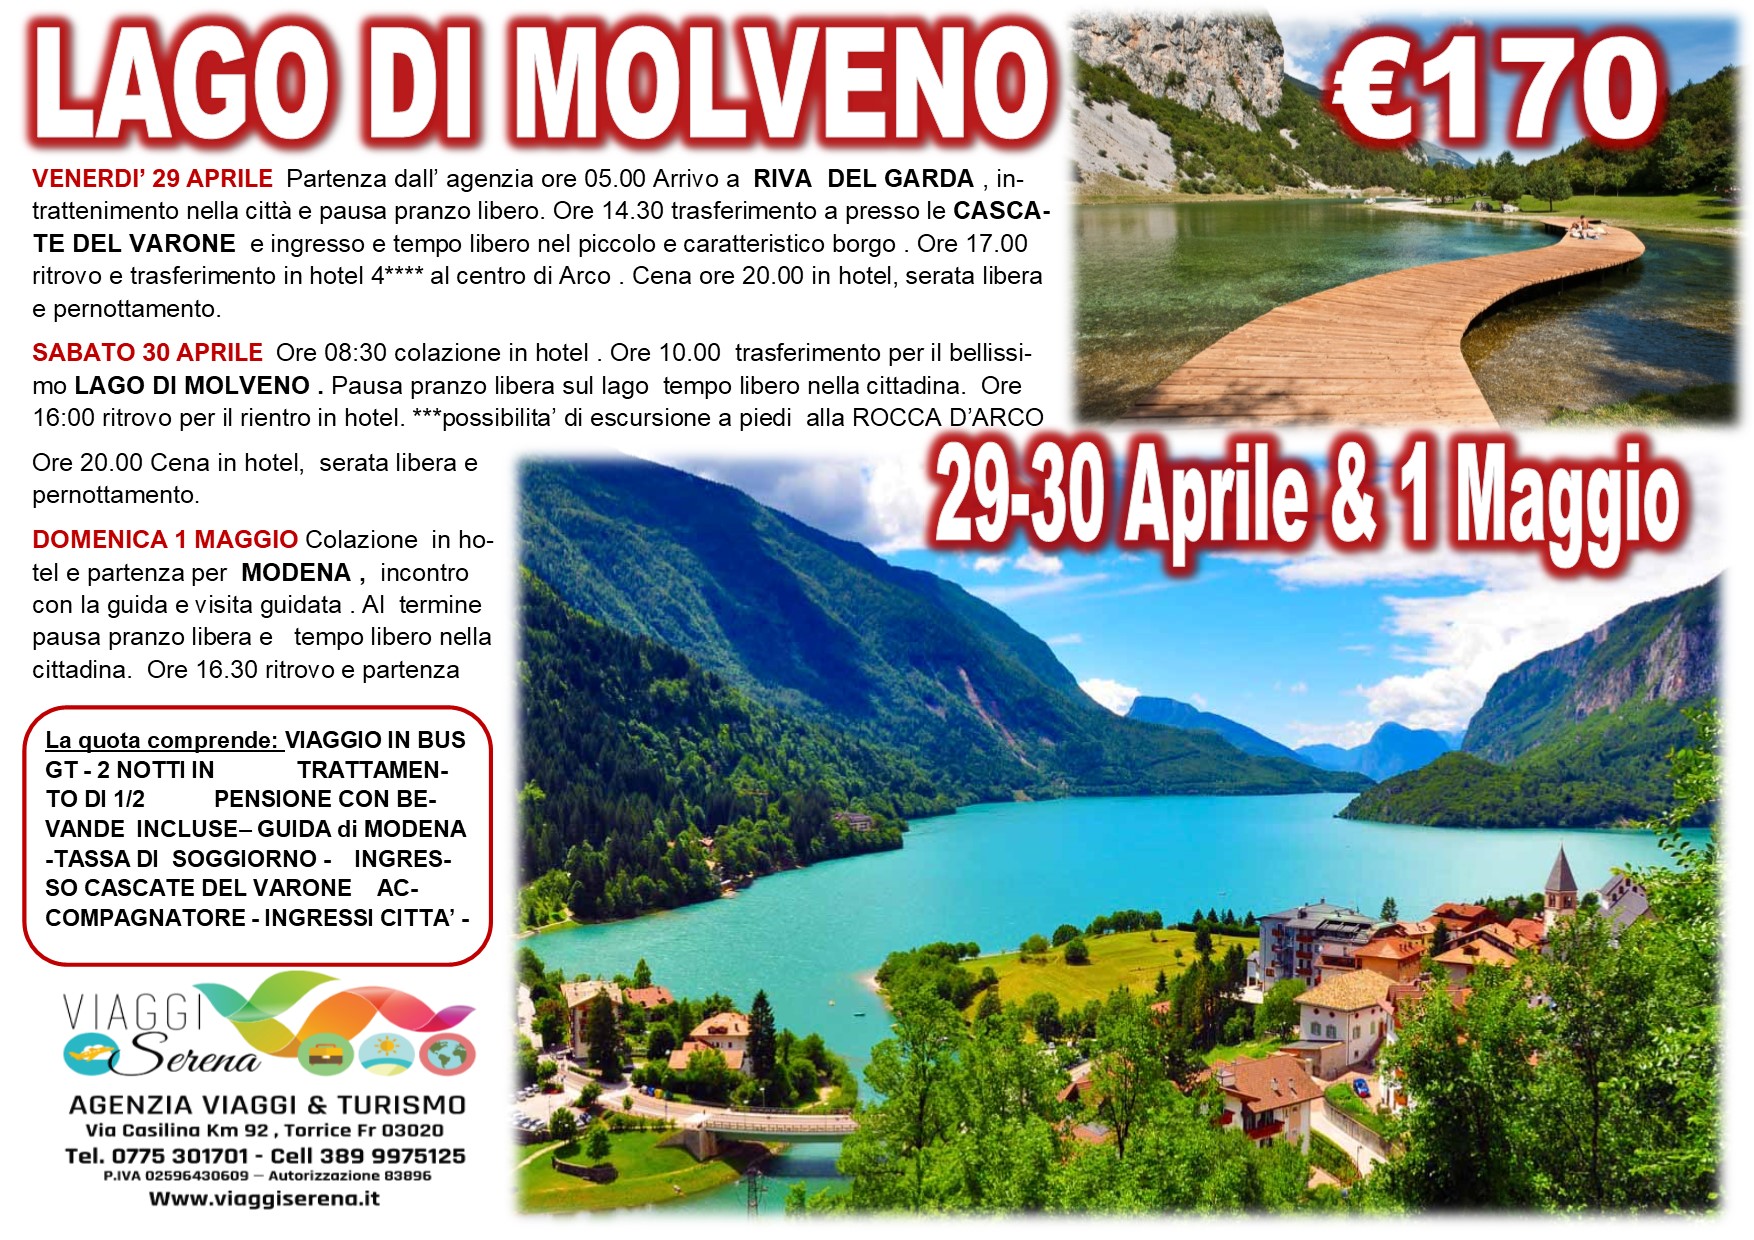 Viaggi di Gruppo: Lago di MOLVENO, Modena & Cascate del Varone 29-30 Aprile 1 Maggio € 170,00